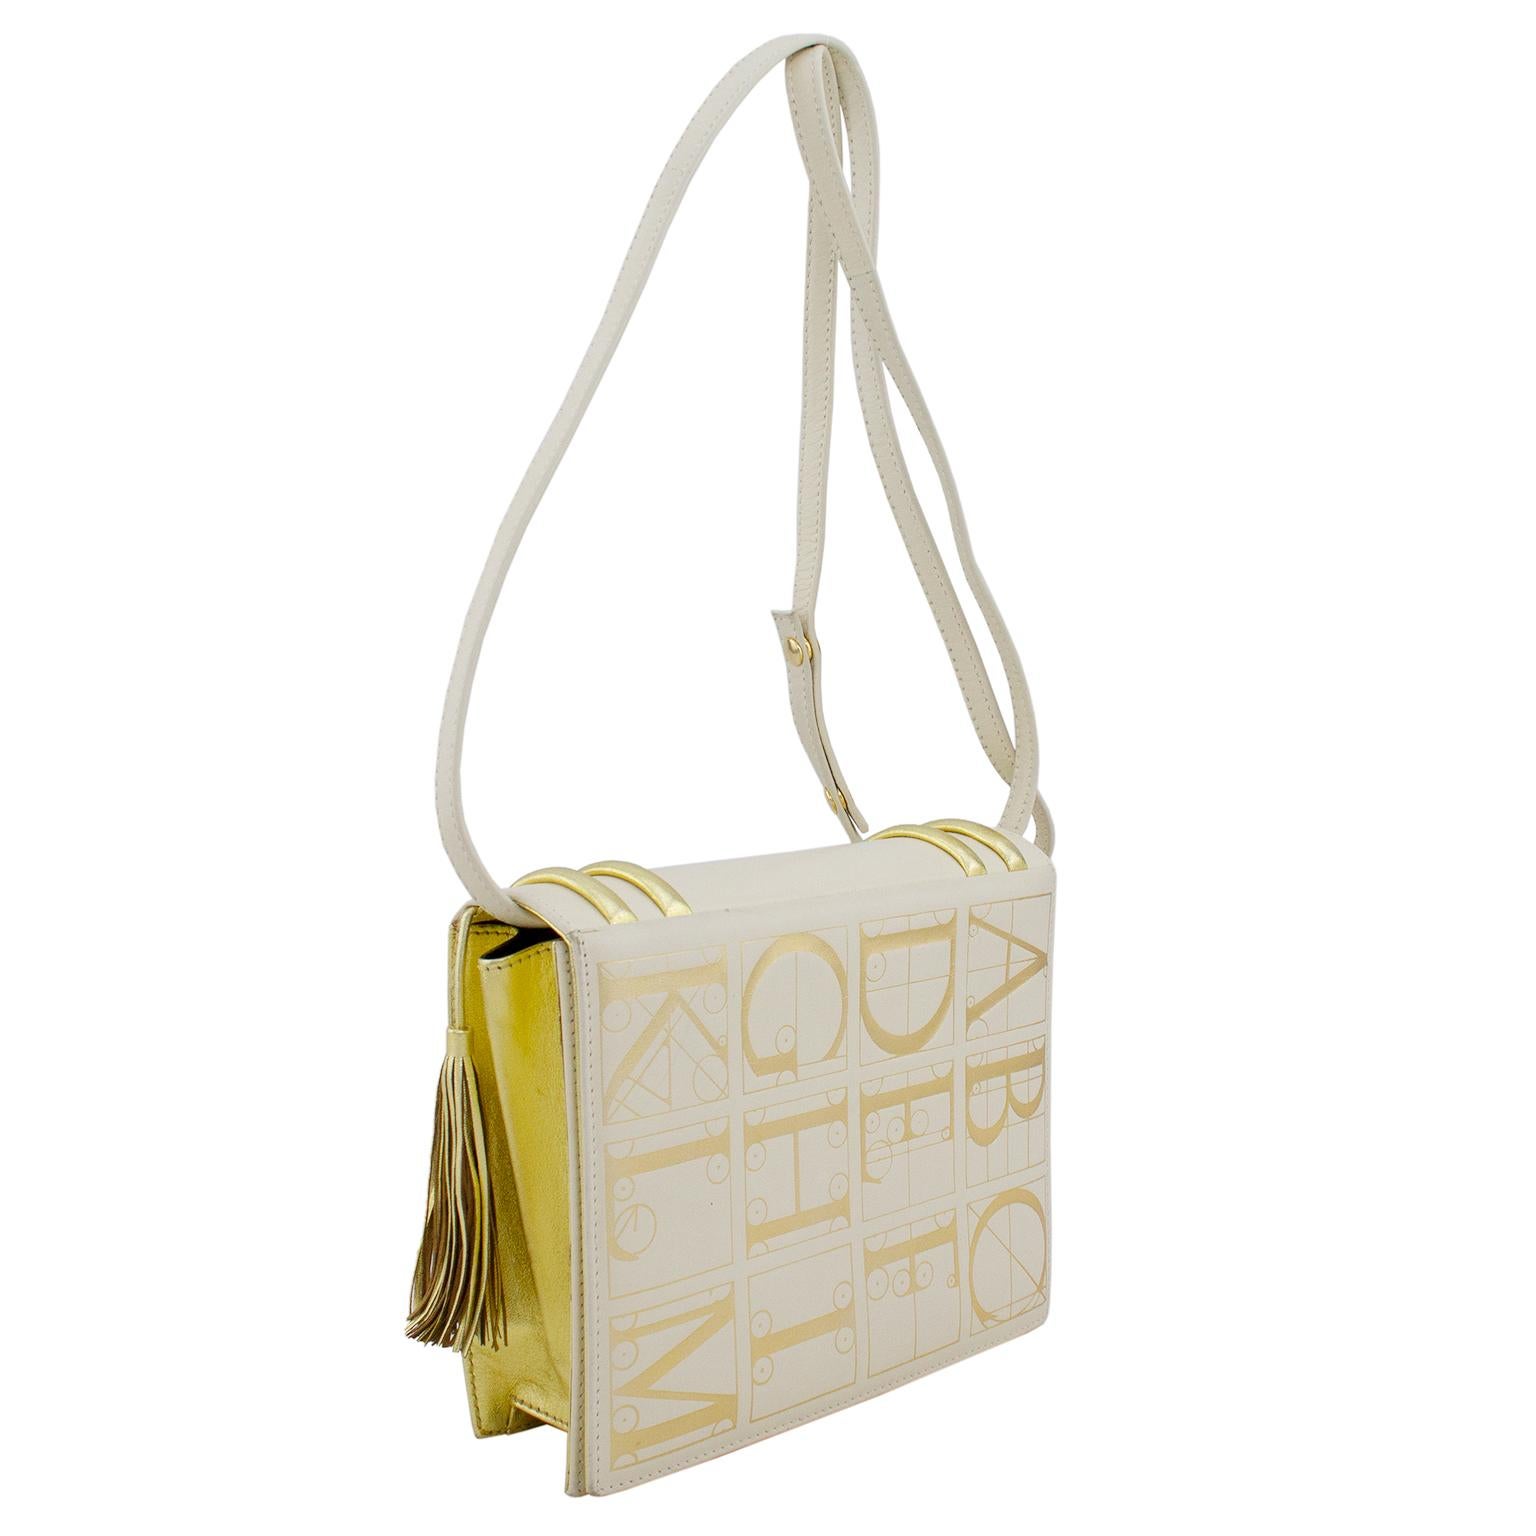 1980er Paloma Picasso Abendtasche aus cremefarbenem Leder mit goldenen Details und Quaste. Auf der Vorder- und Rückseite ist das Alphabet in großen goldenen Buchstaben abgebildet und spiegelt das Coverdesign eines skurrilen, gefälschten